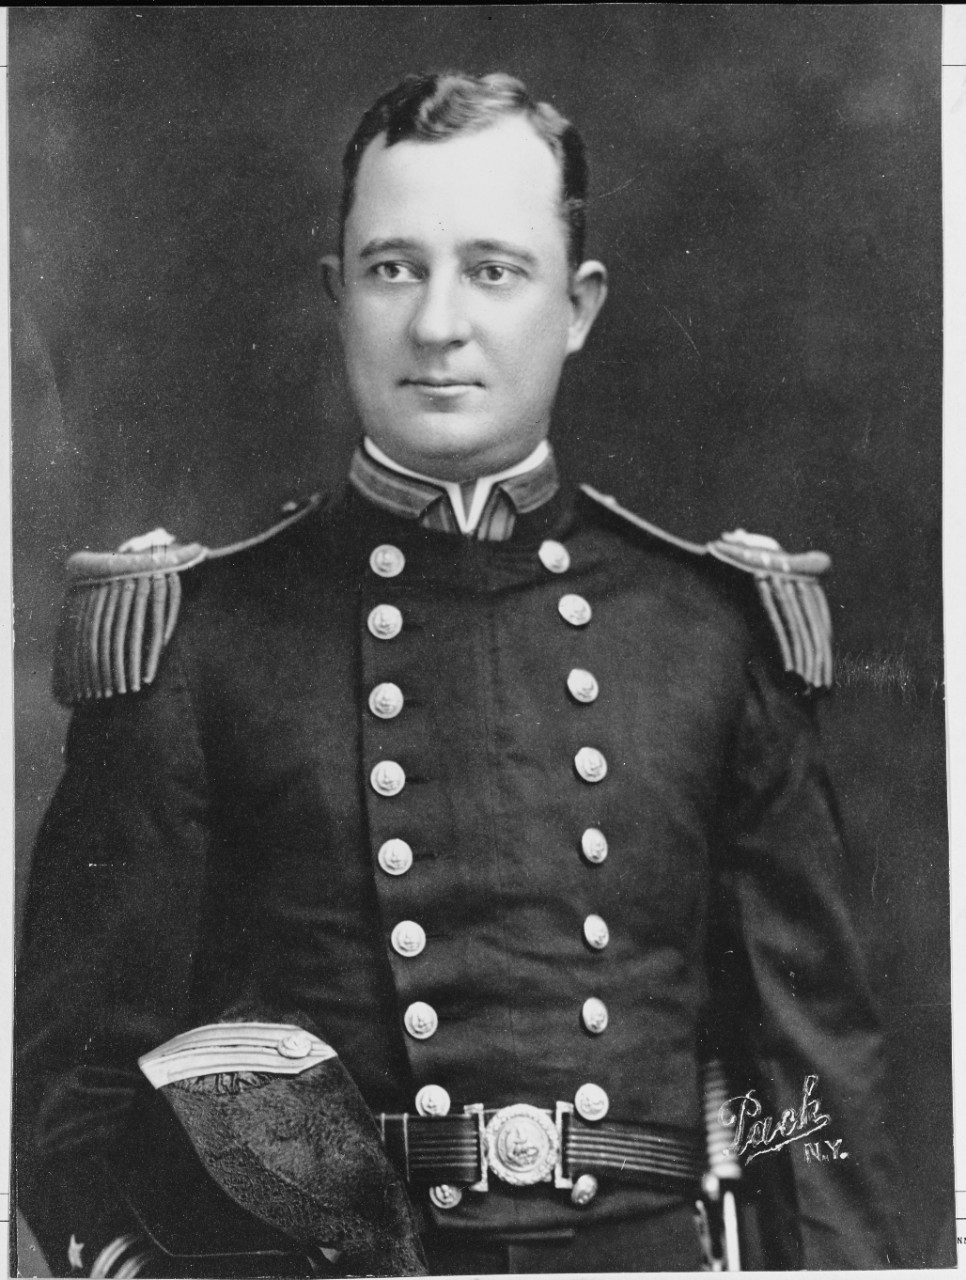 Lieutenant Frank Ragan King, USN (1884-1919)